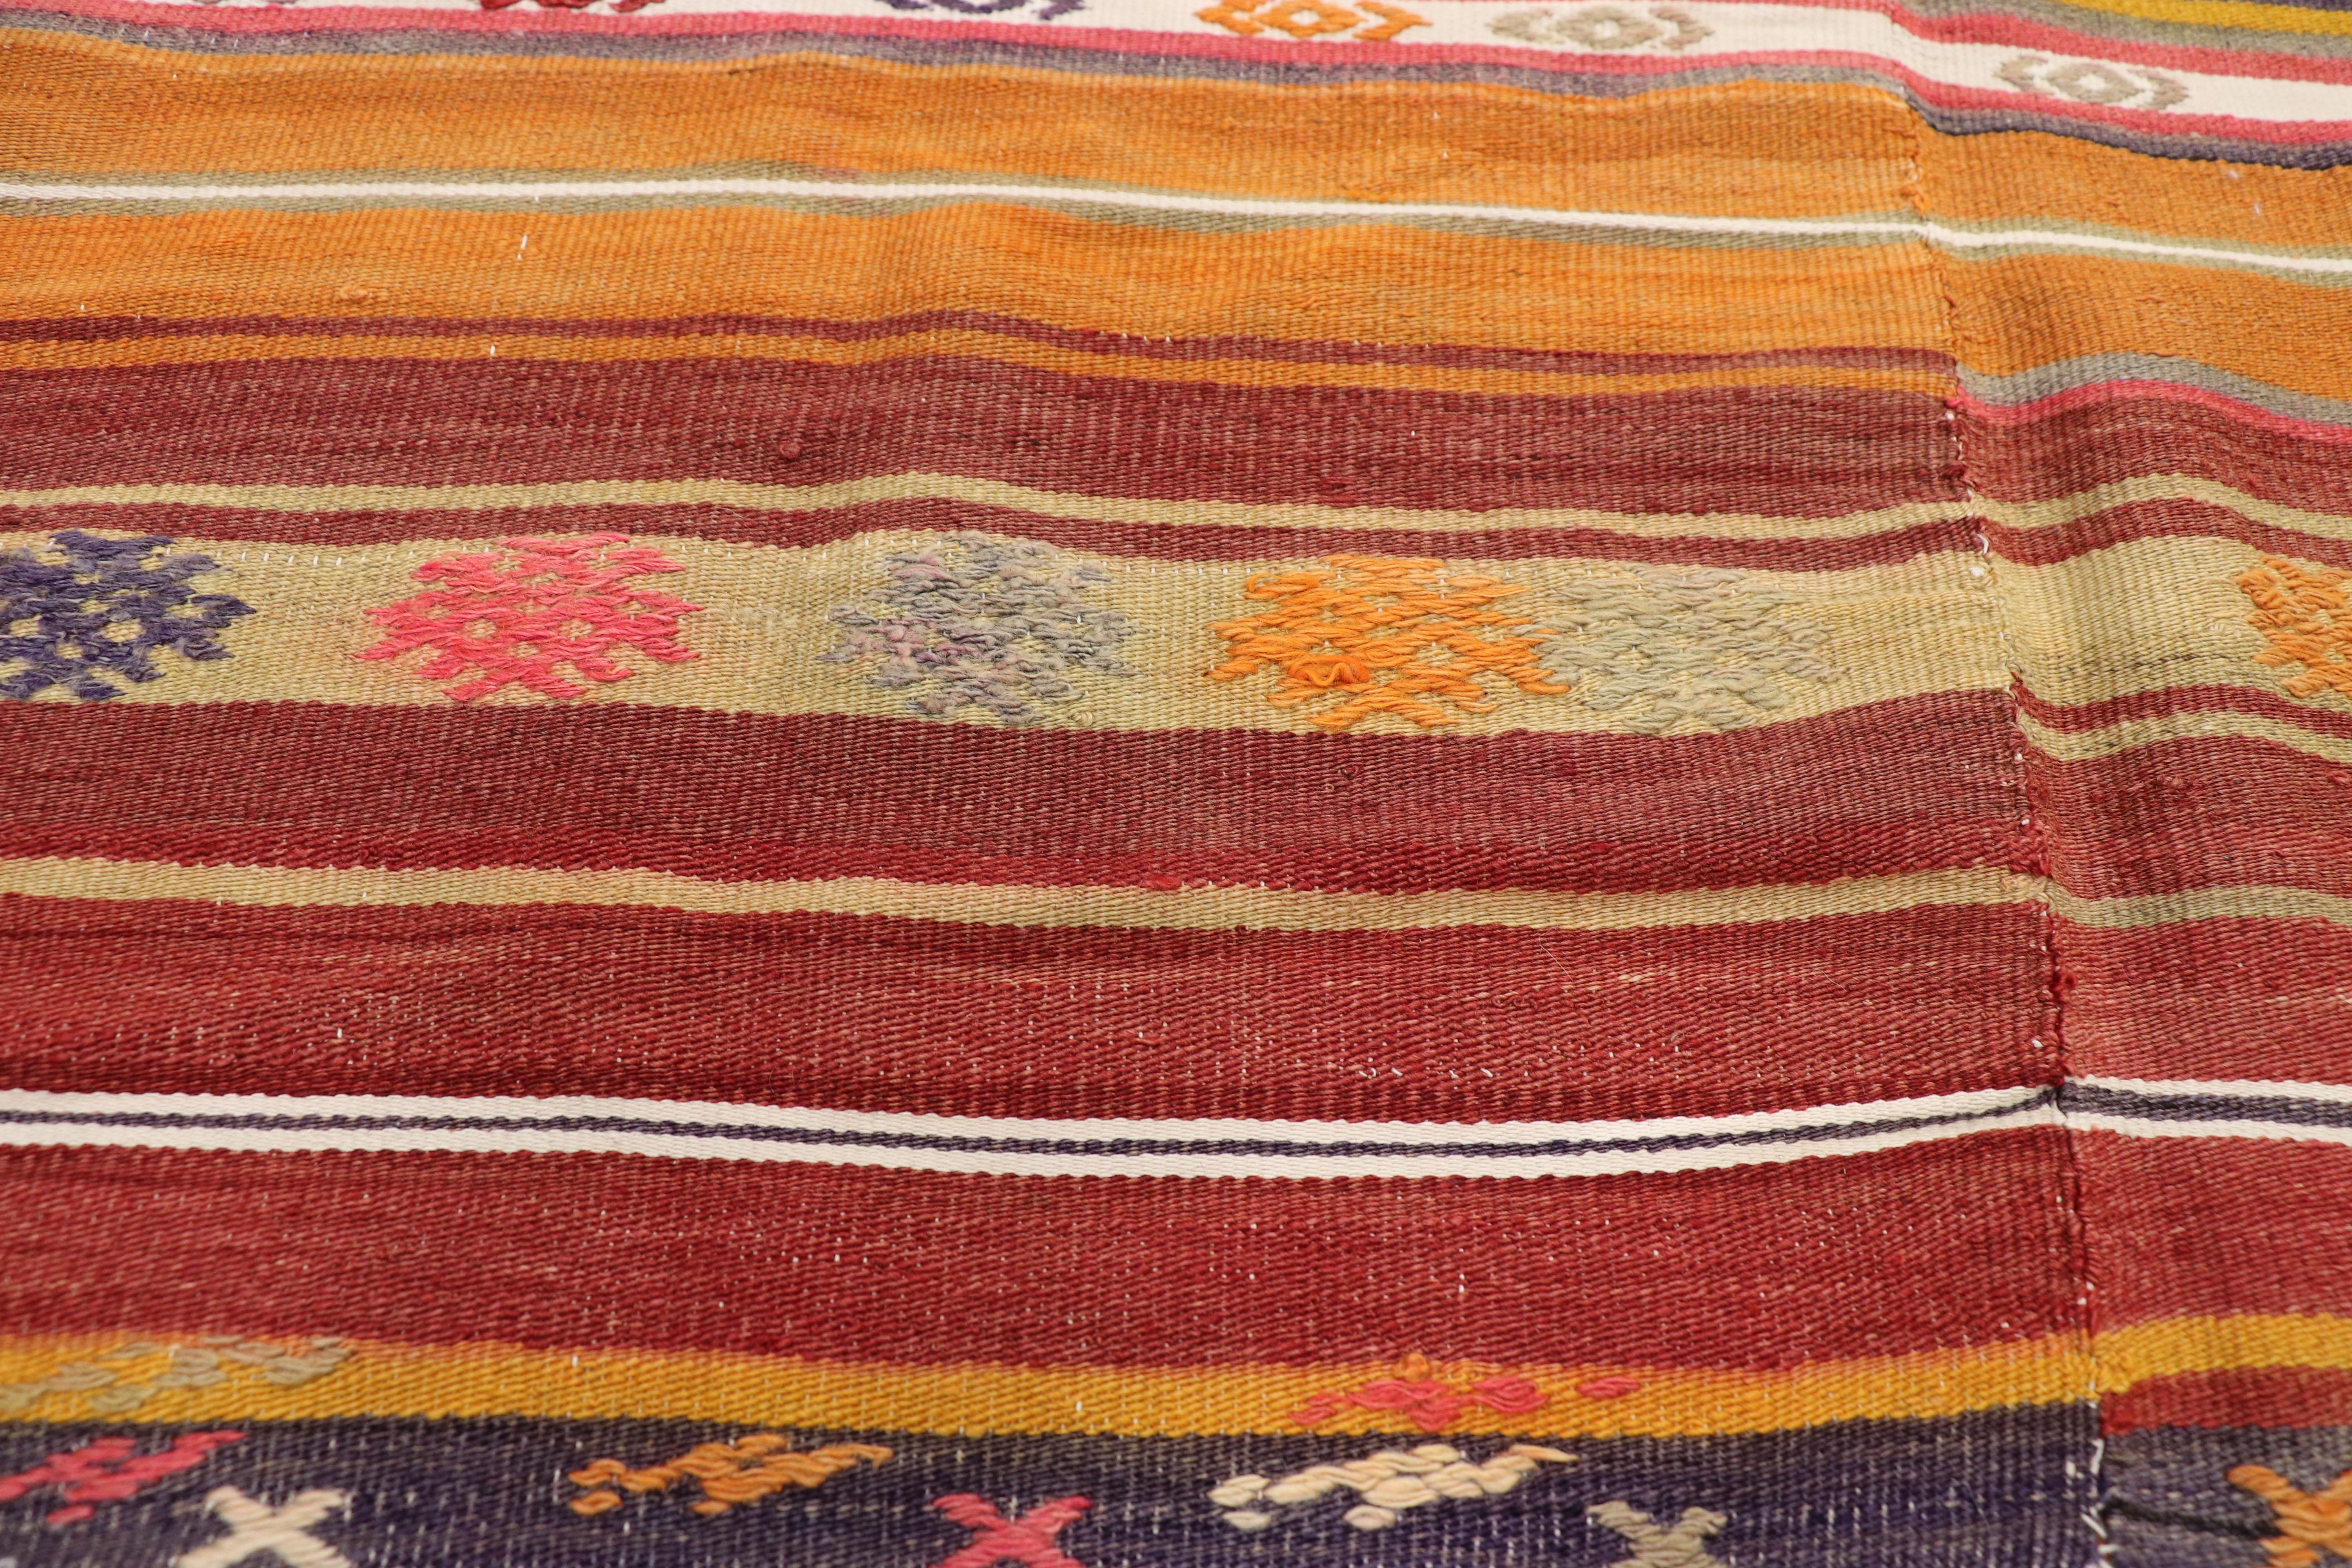 Hand-Woven Vintage Turkish Kilim Flat-Weave Rug with Boho Chic Southwestern Style